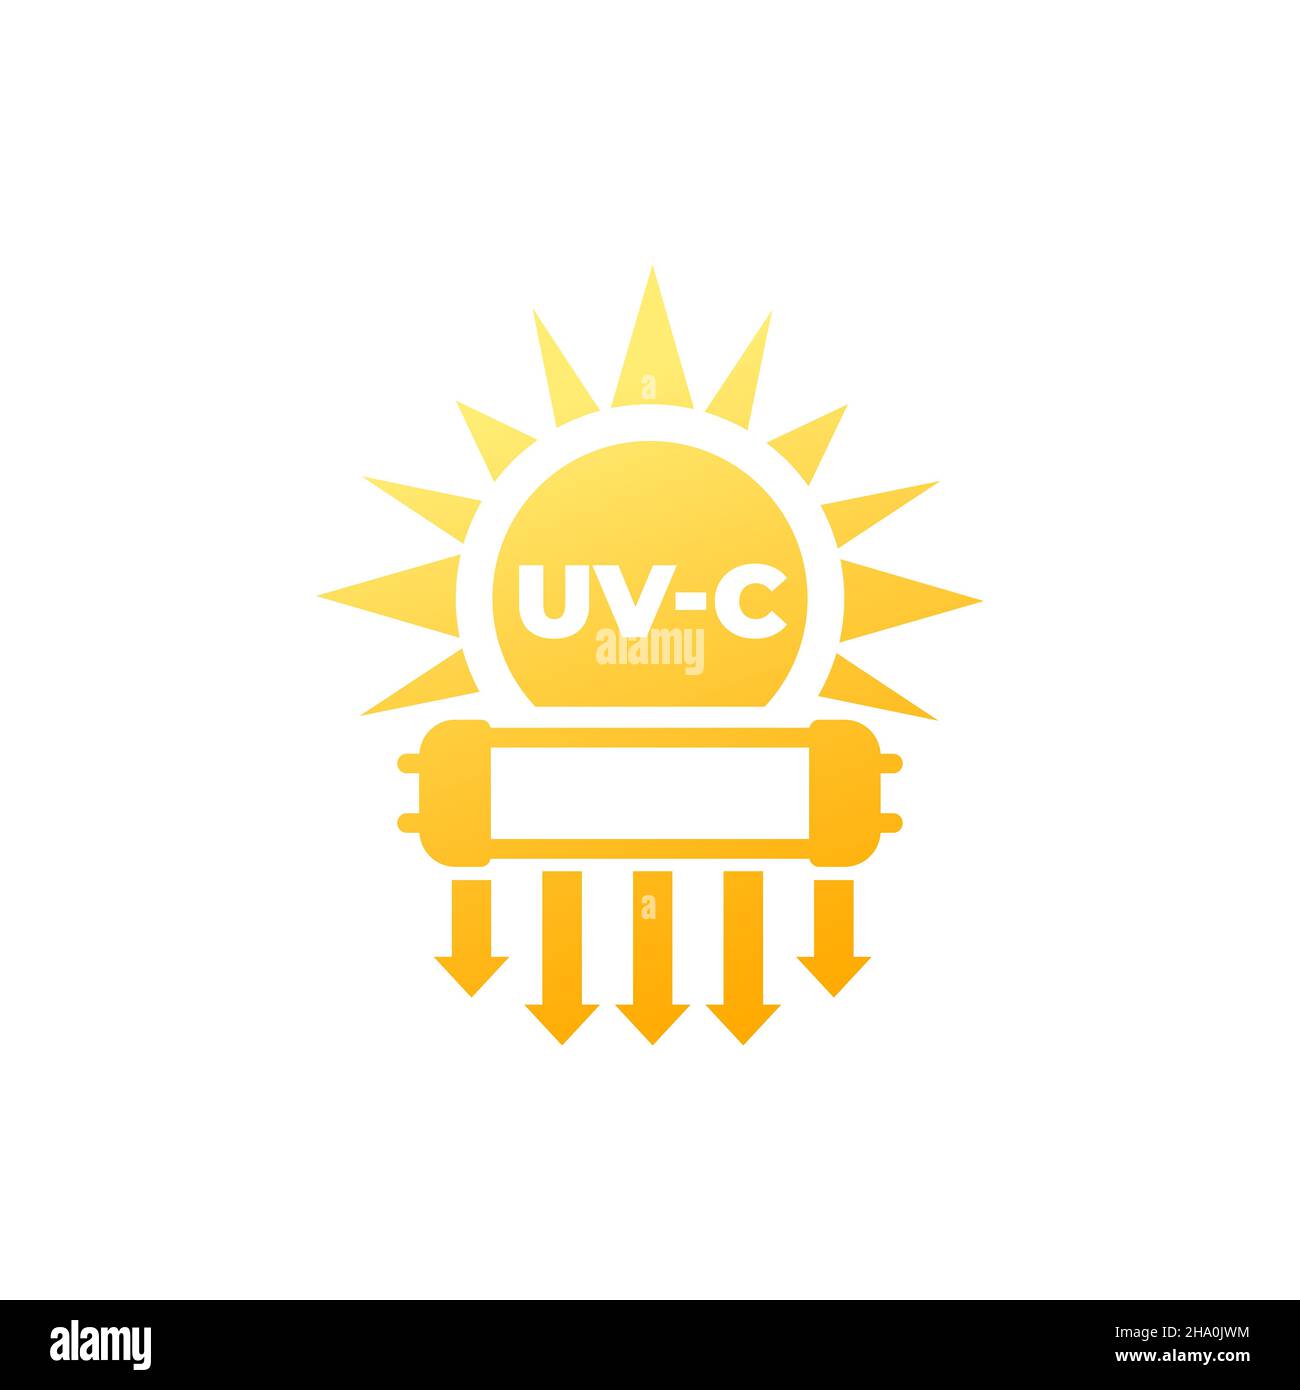 UV-C-Licht zur Desinfektion Symbol mit Sonne und Lampe Stock Vektor